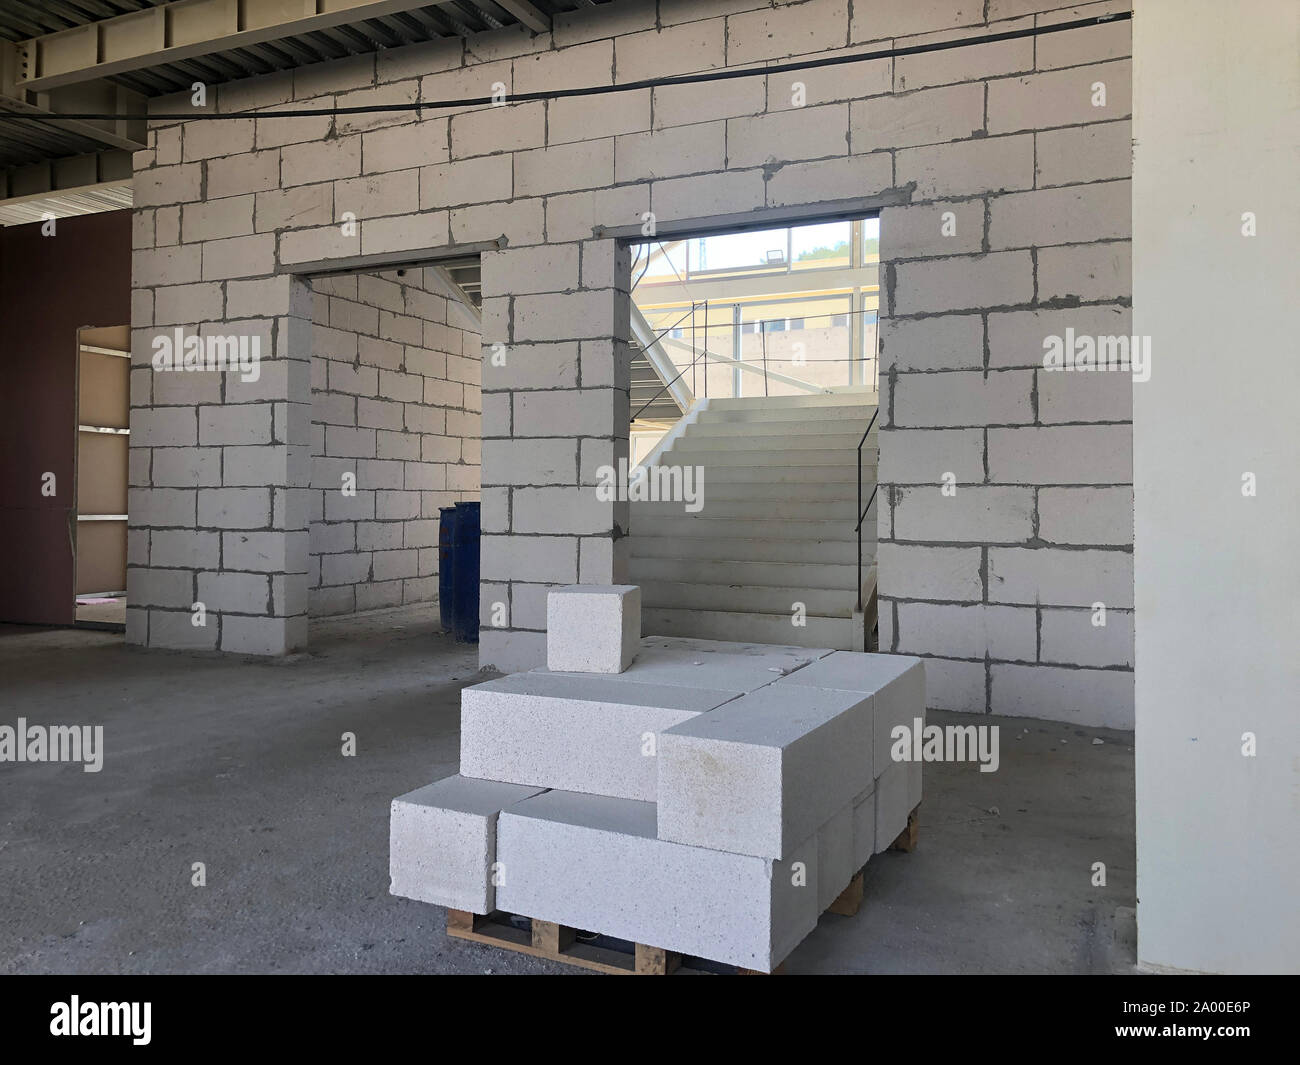 Hohlblocksteine in Blocklagerung auf dem Boden der vorgefertigten  mehrstöckigen Gebäudes auf der Baustelle Stockfotografie - Alamy